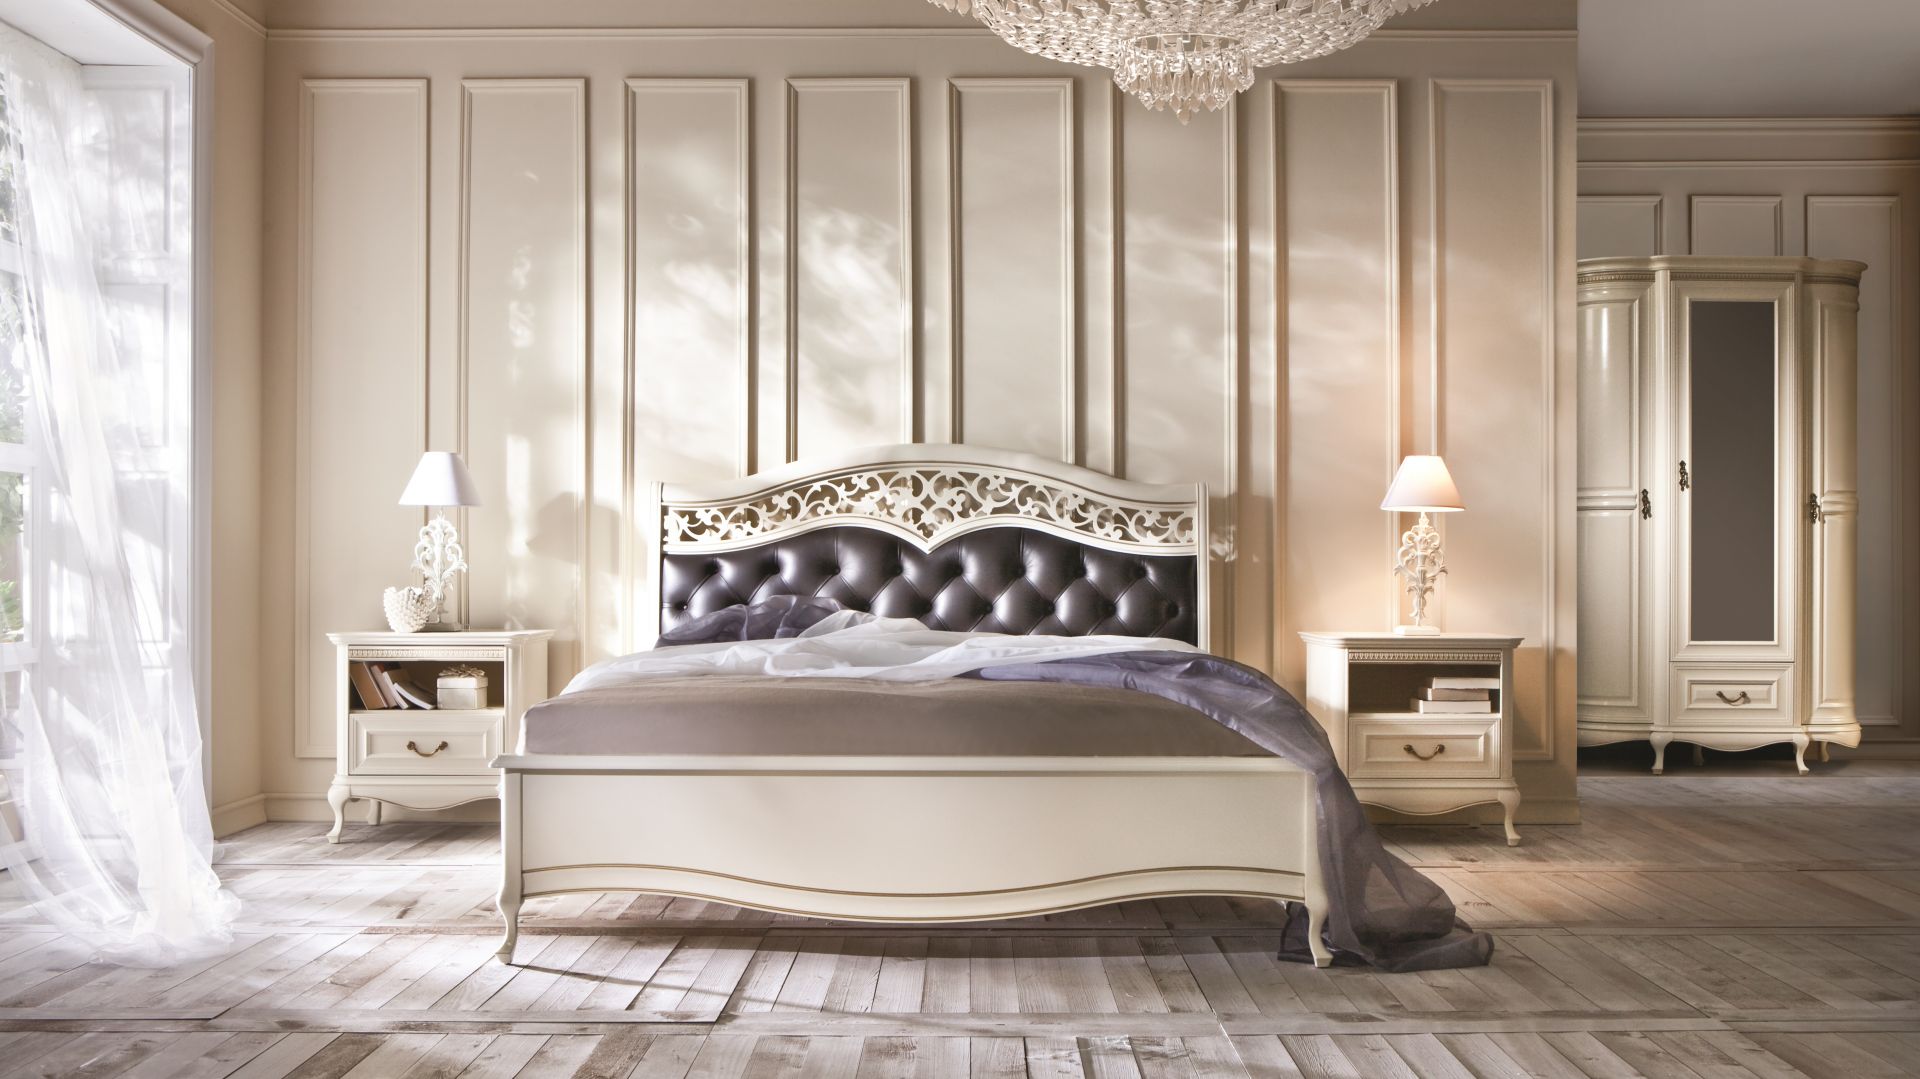 Sypialnia w stylu glamour - propozycje mebli pasujących do aranżacji